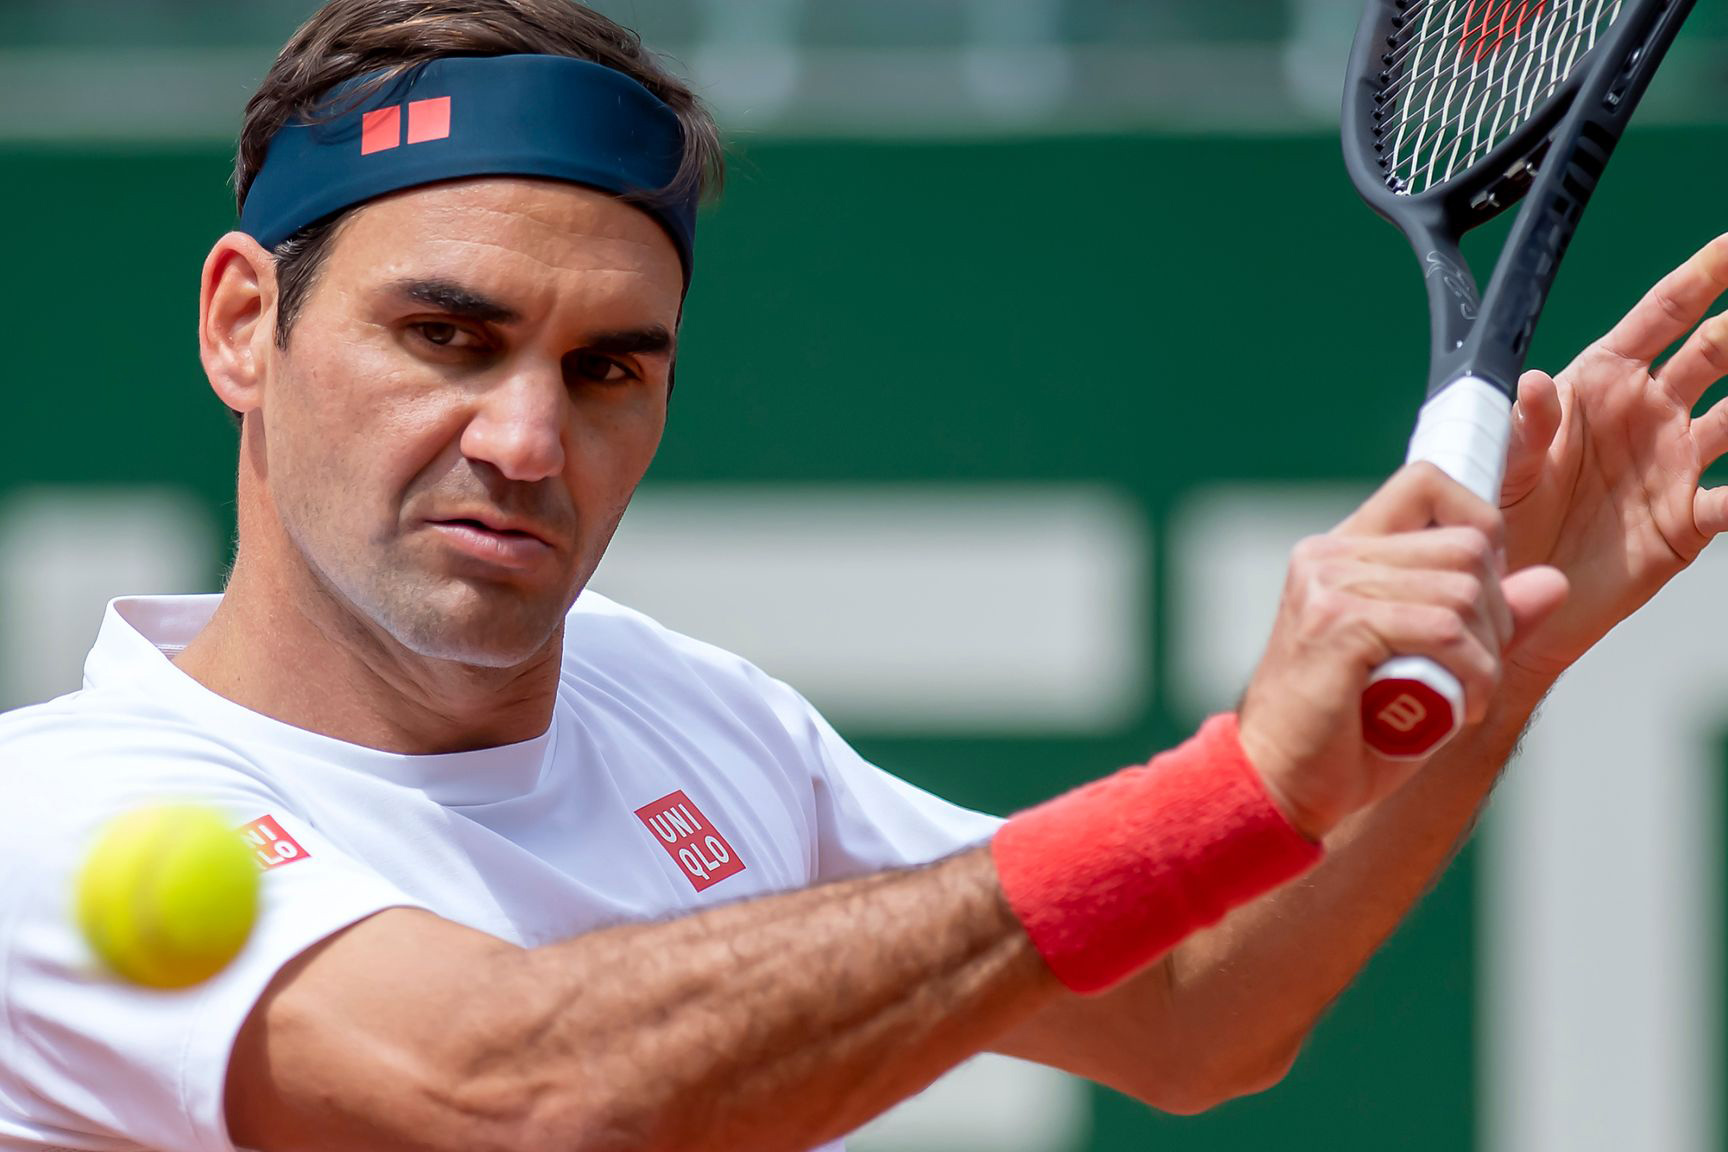 Ngay khi huyền thoại John McEnroe đánh giá rất cao về việc Roger Federer có khả năng phục hồi